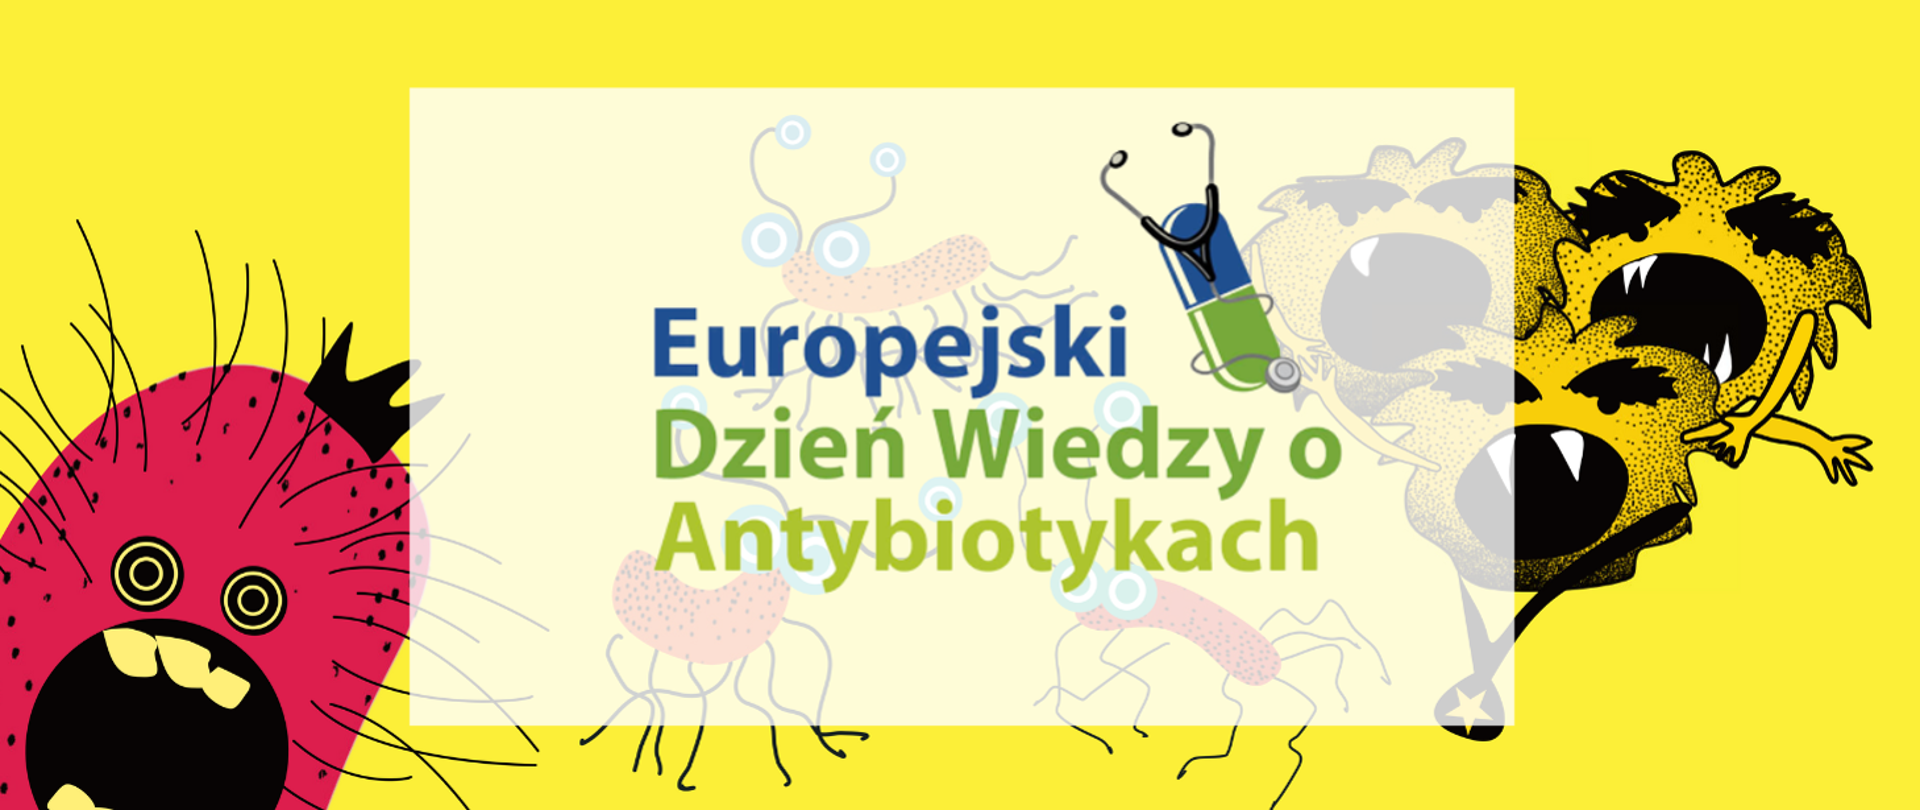 Baner przedstawia różne wirusy, które uciekają przed antybiotykiem. Na środku widnieje napis "Europejski Dzień Wiedzy o Antybiotykach".